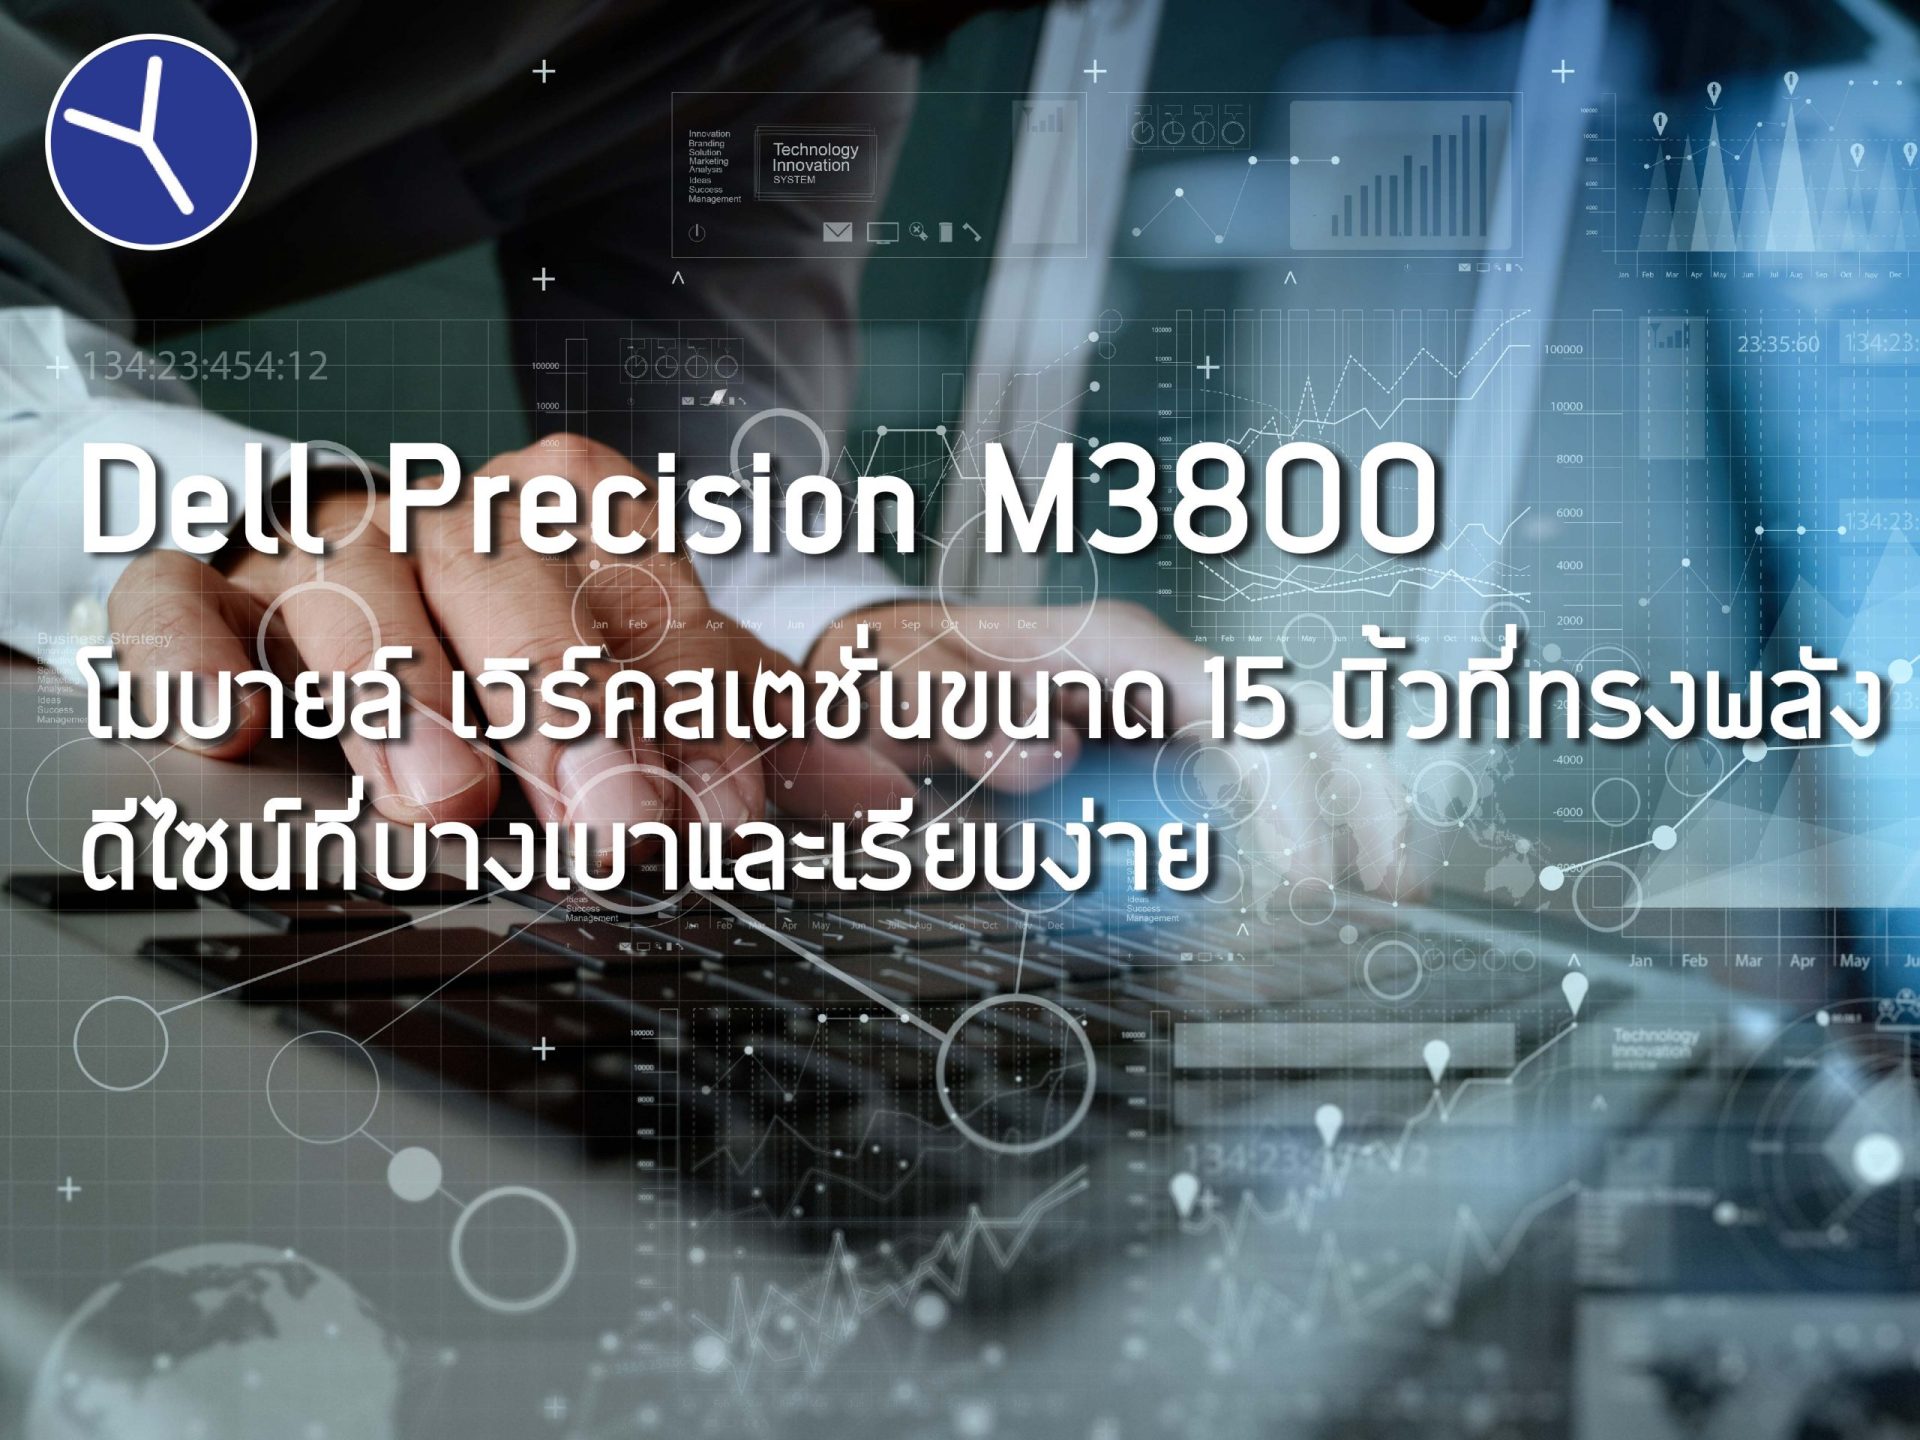 Dell Precision M3800 โมบายล์ เวิร์คสเตชั่นขนาด 15 นิ้วที่ทรงพลัง ดีไซน์ที่บางเบาและเรียบง่าย